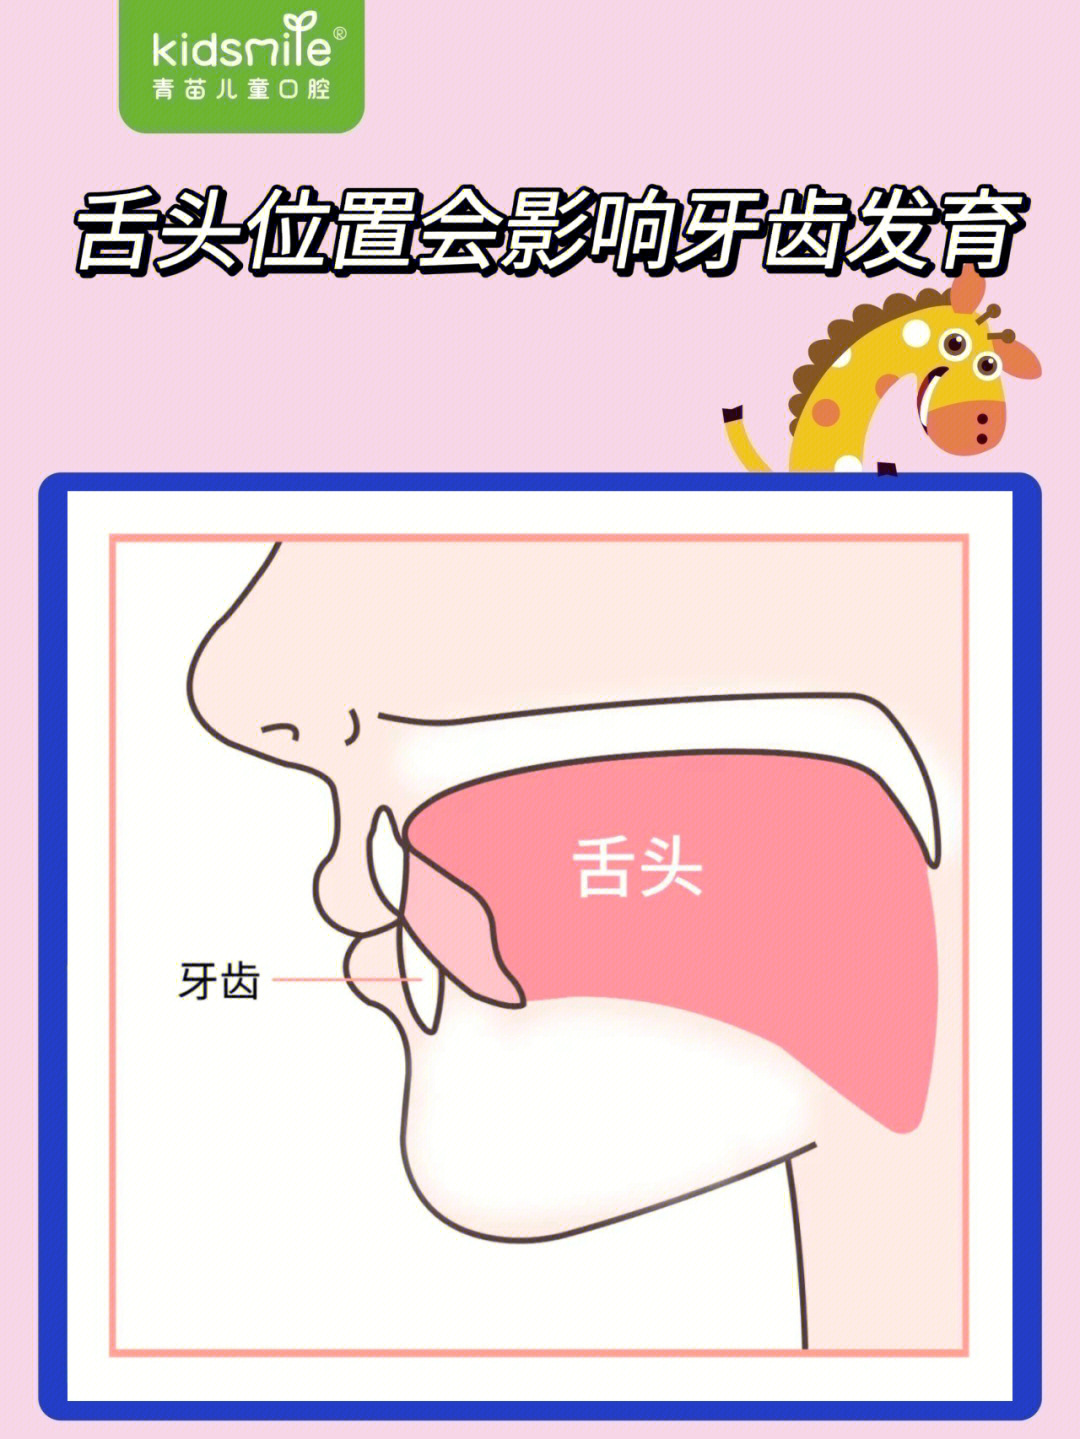 舌头正确位置图解图片